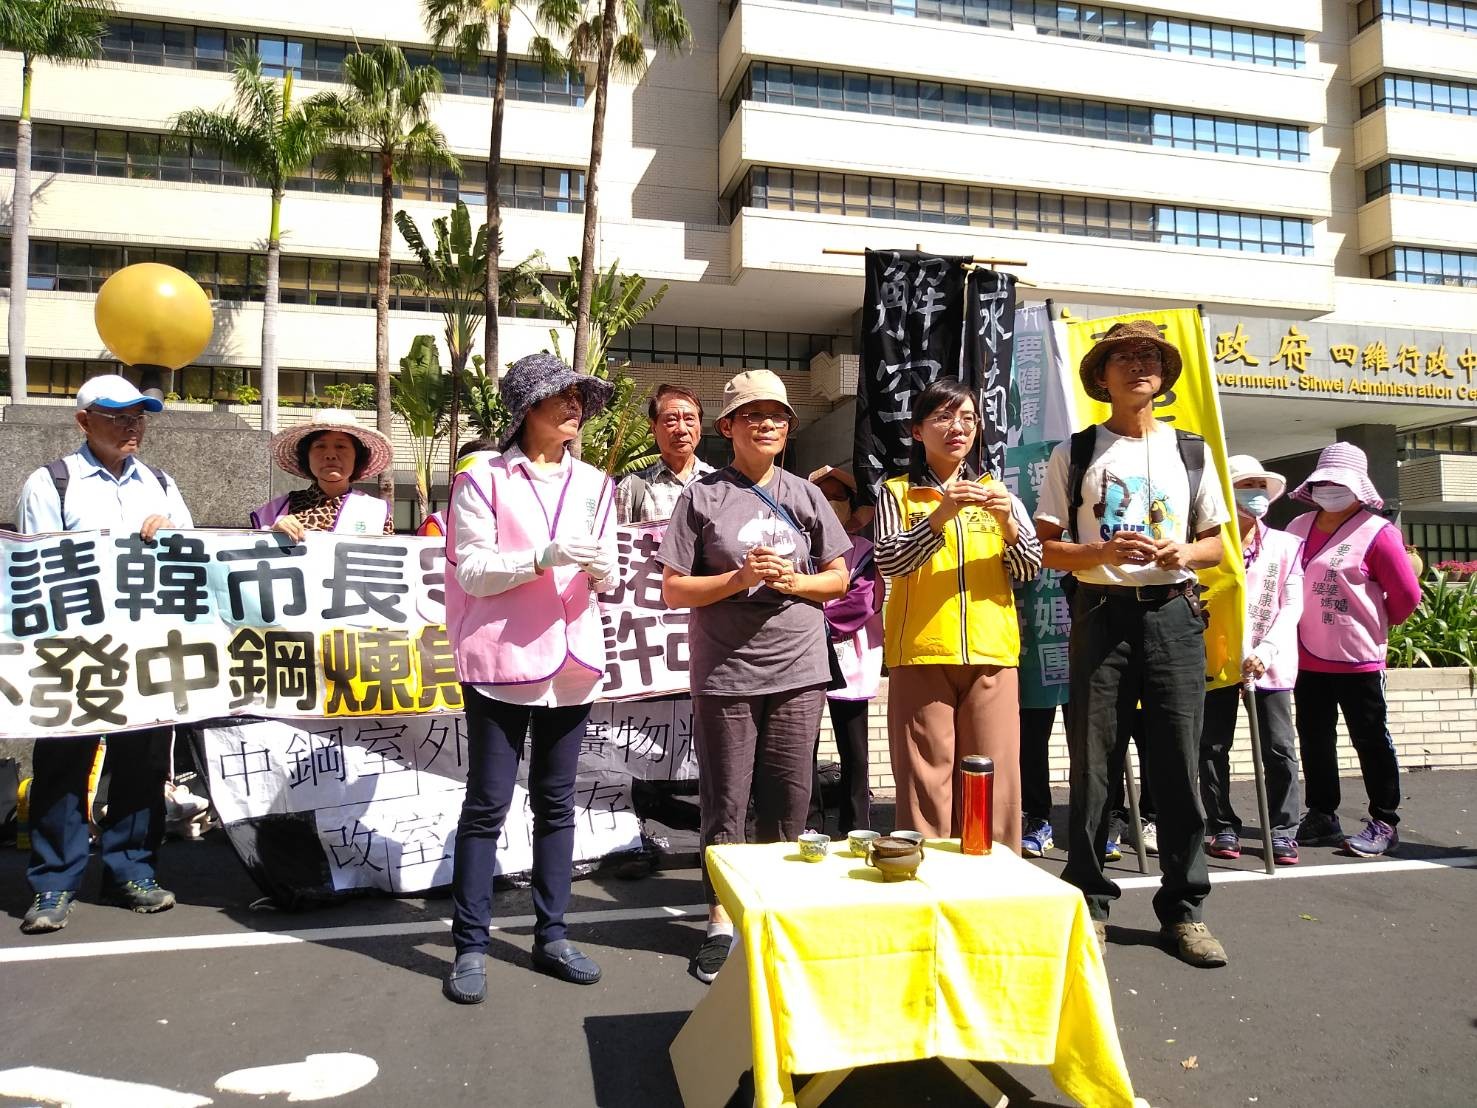 抗議中鋼汙染 環團行動劇祭香求南風